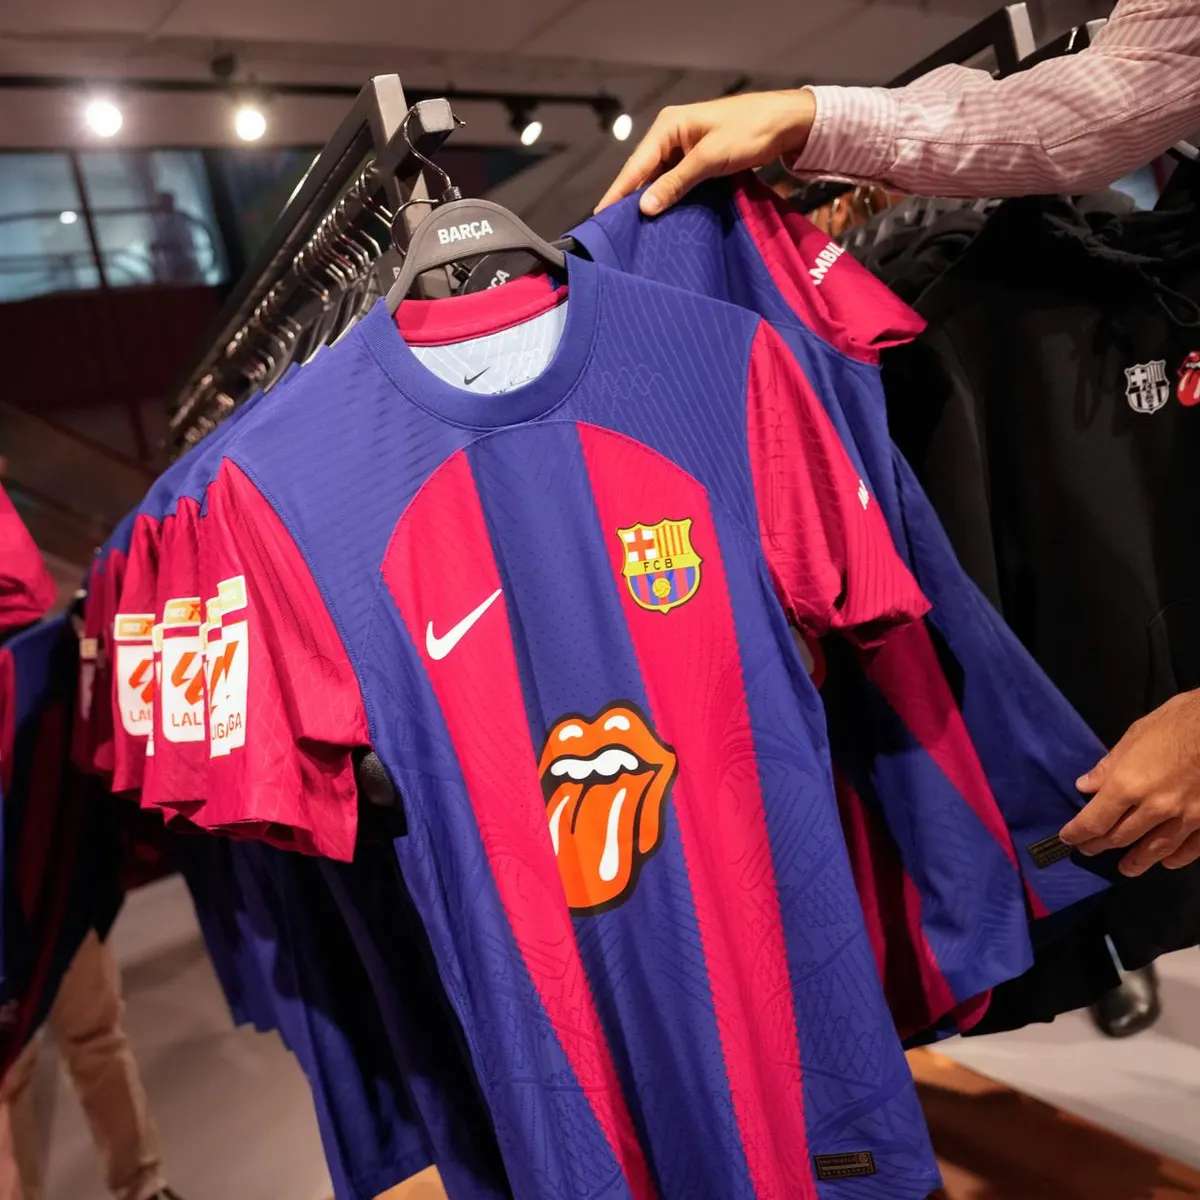 El exorbitante precio de las camisetas del Barça con el logo de